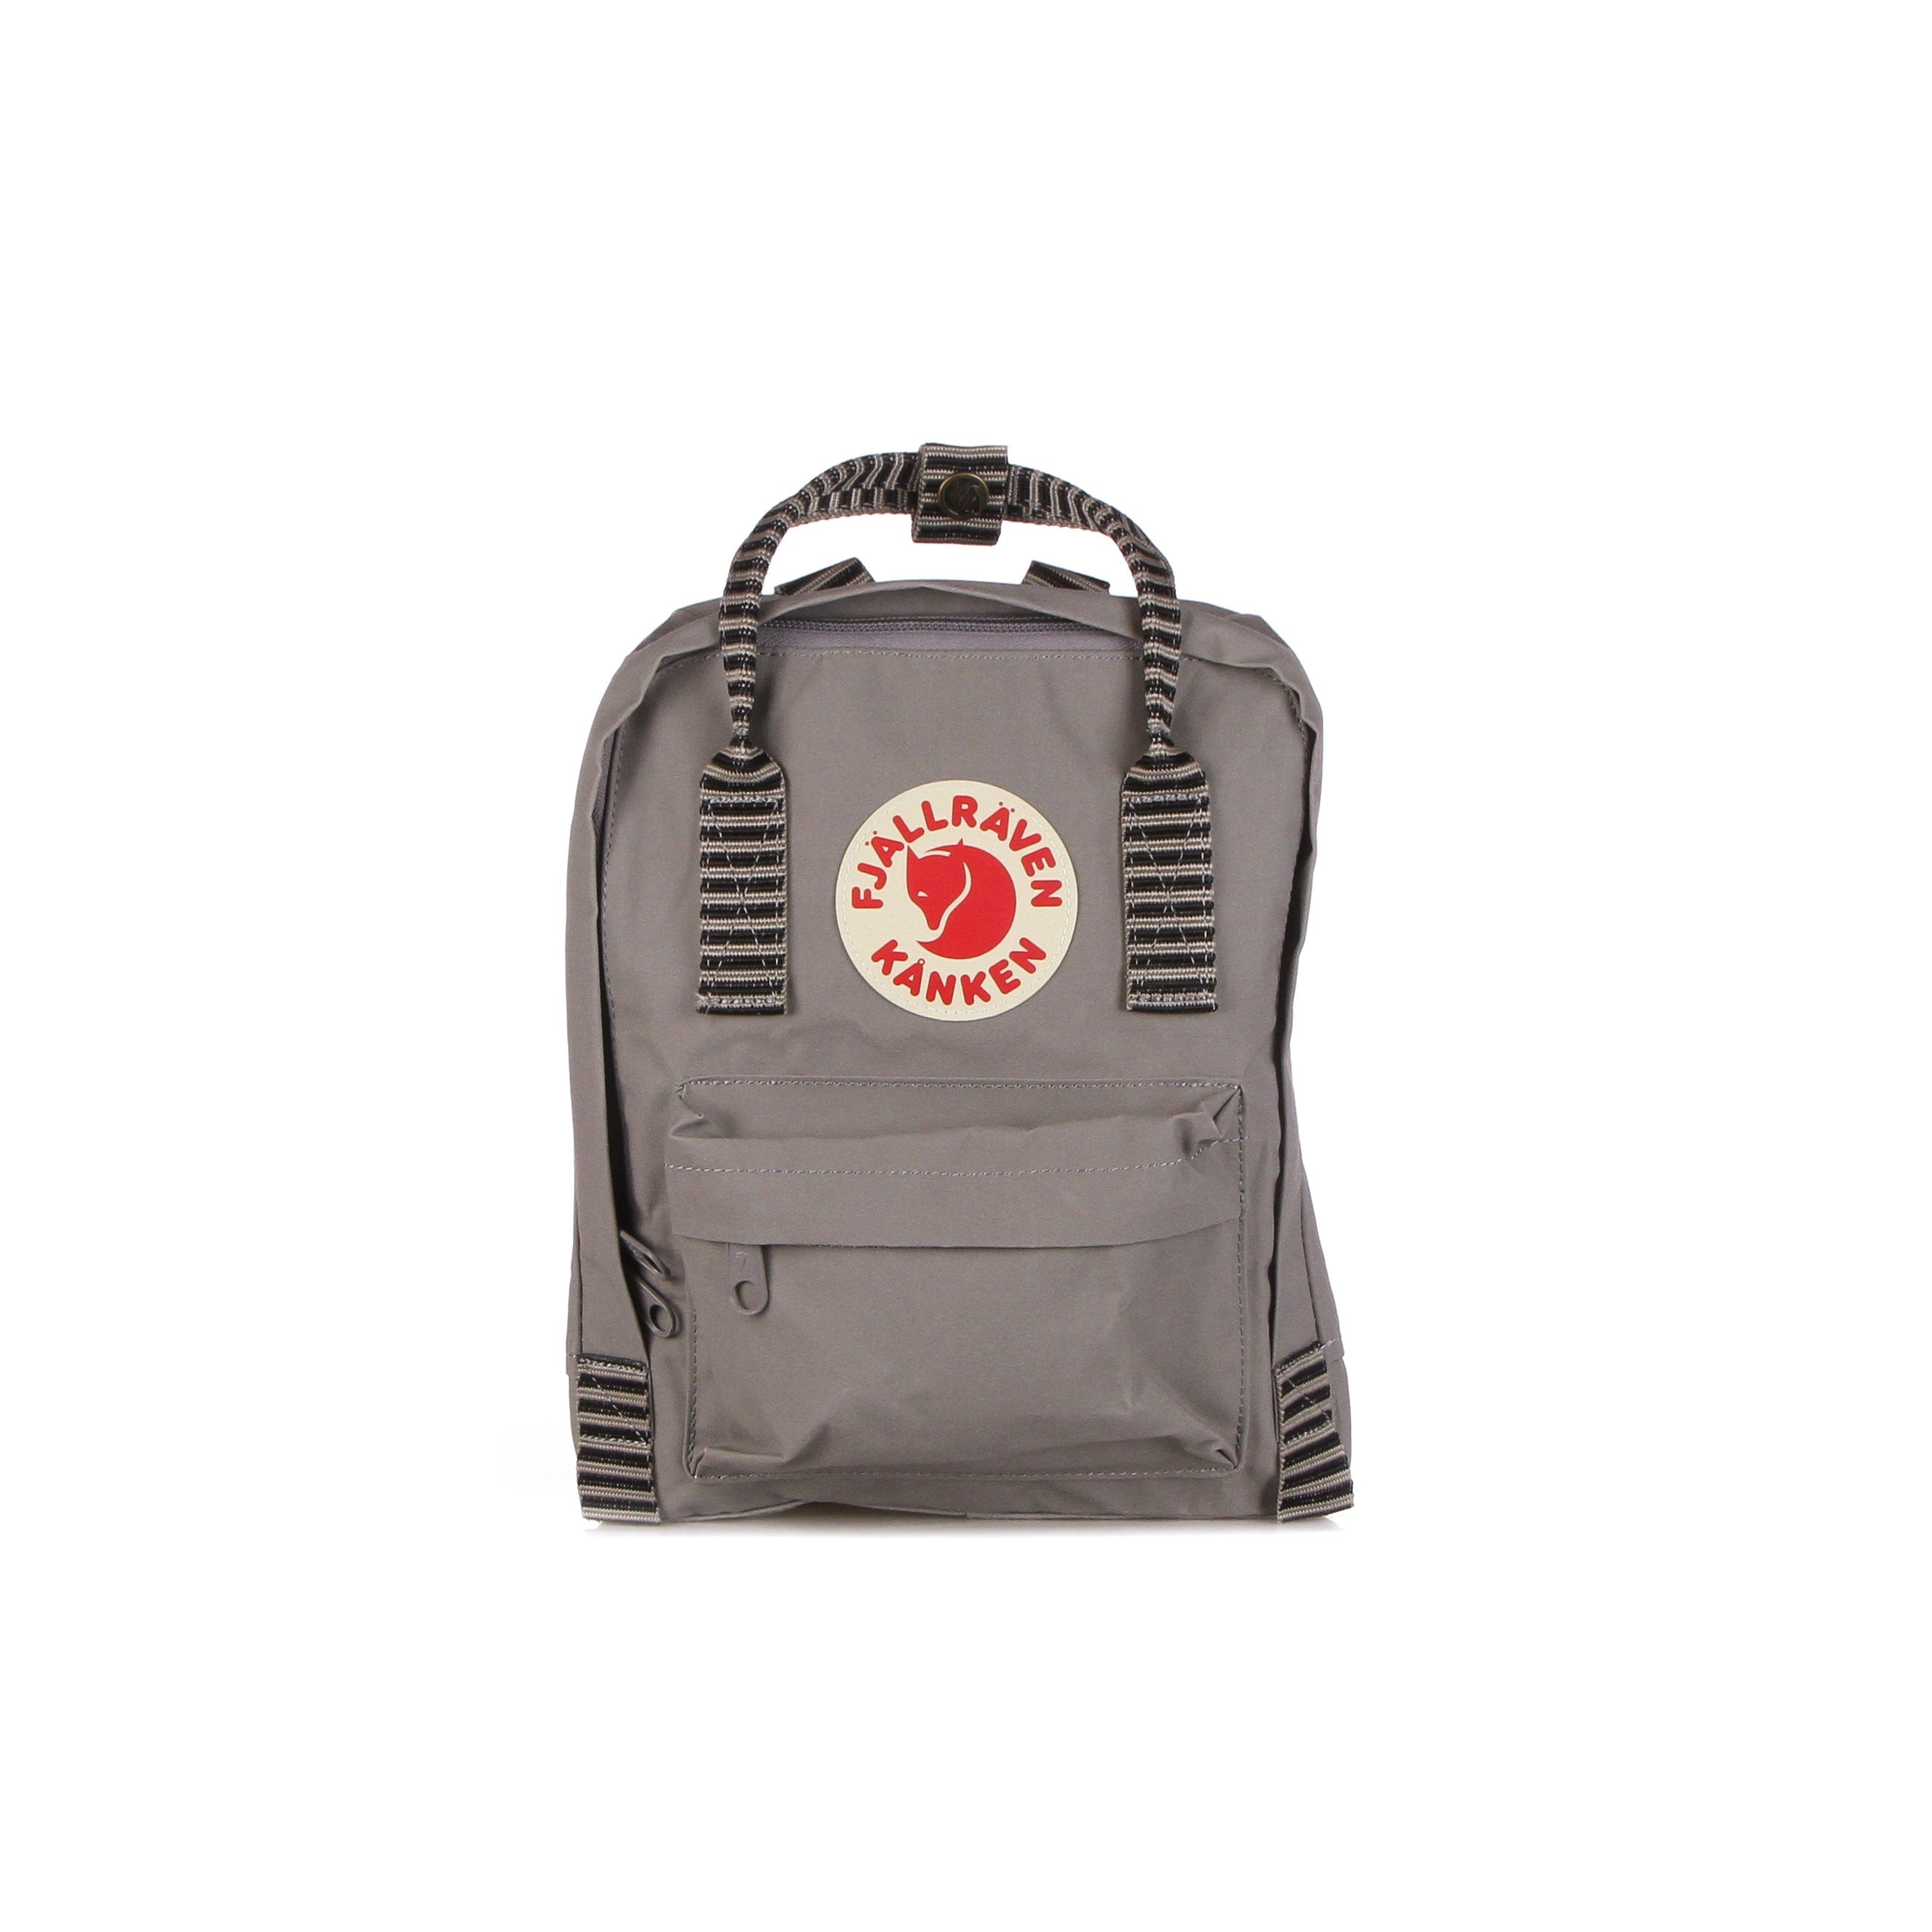 Unisex Kanken Mini Fog/striped backpack